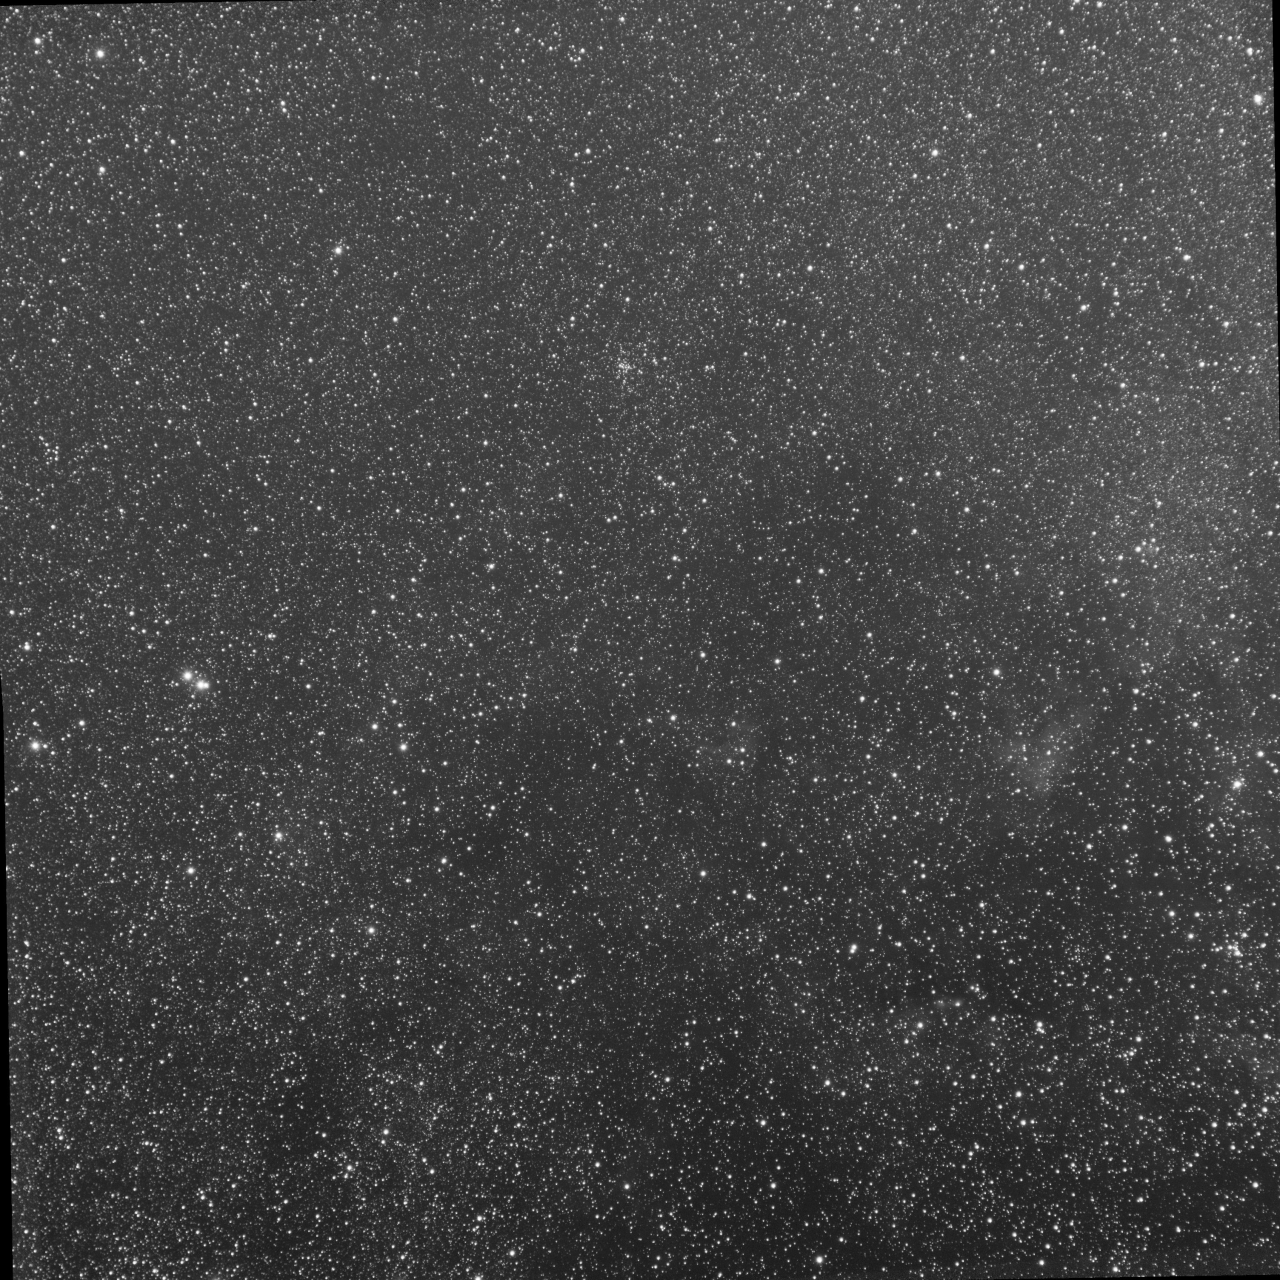 Cygnus near DWB111 - B